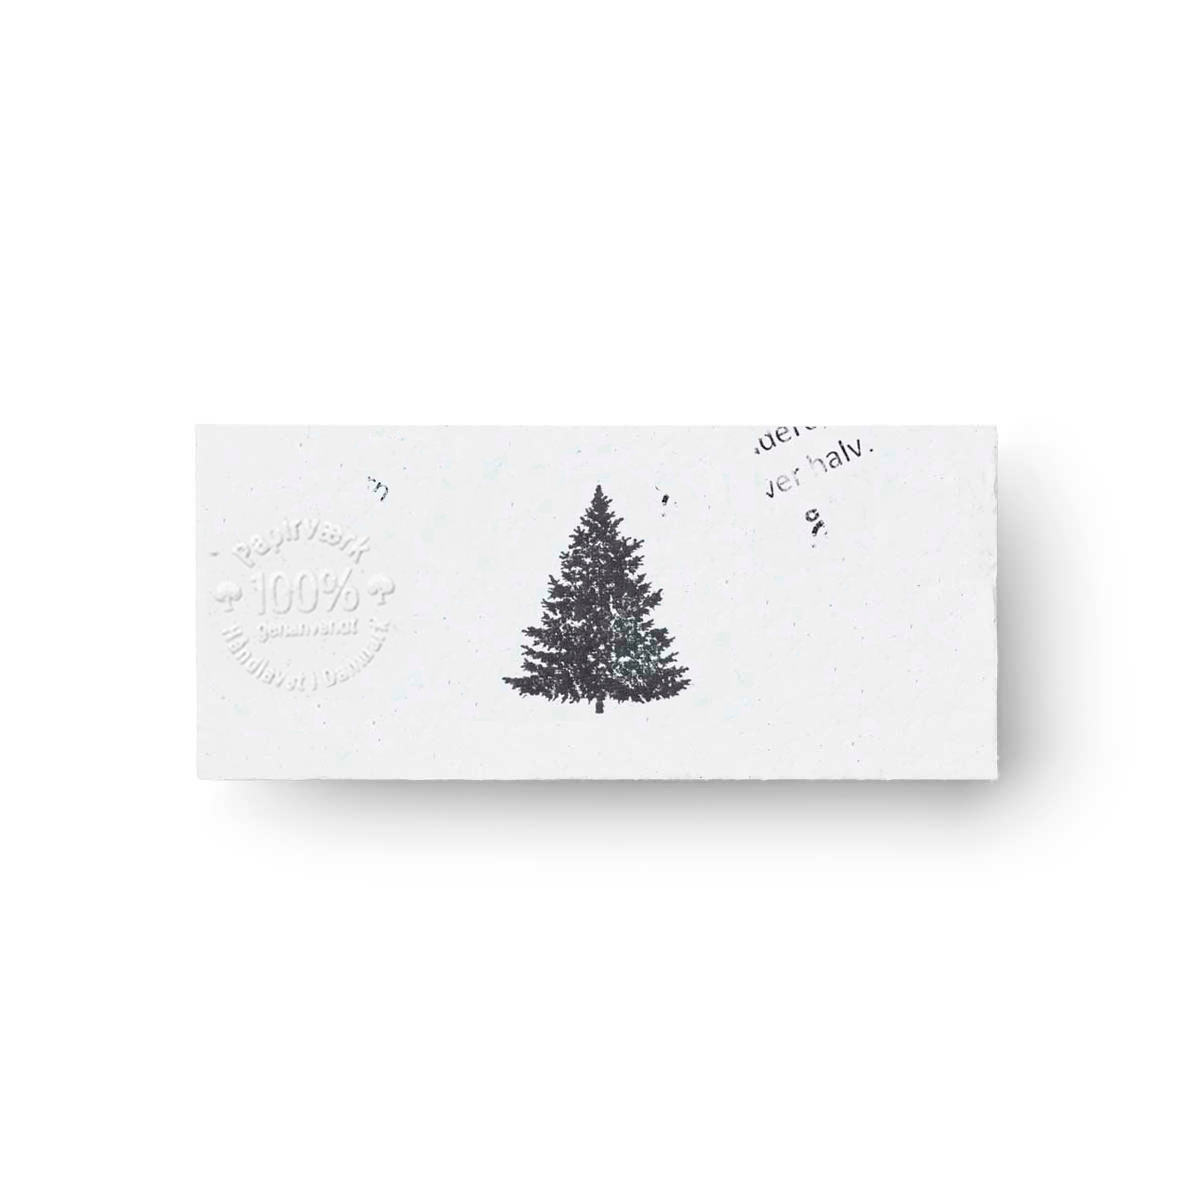 Juletræet - 3 stk - til og fra (4x9cm) - uden vedhæng - Papirværk